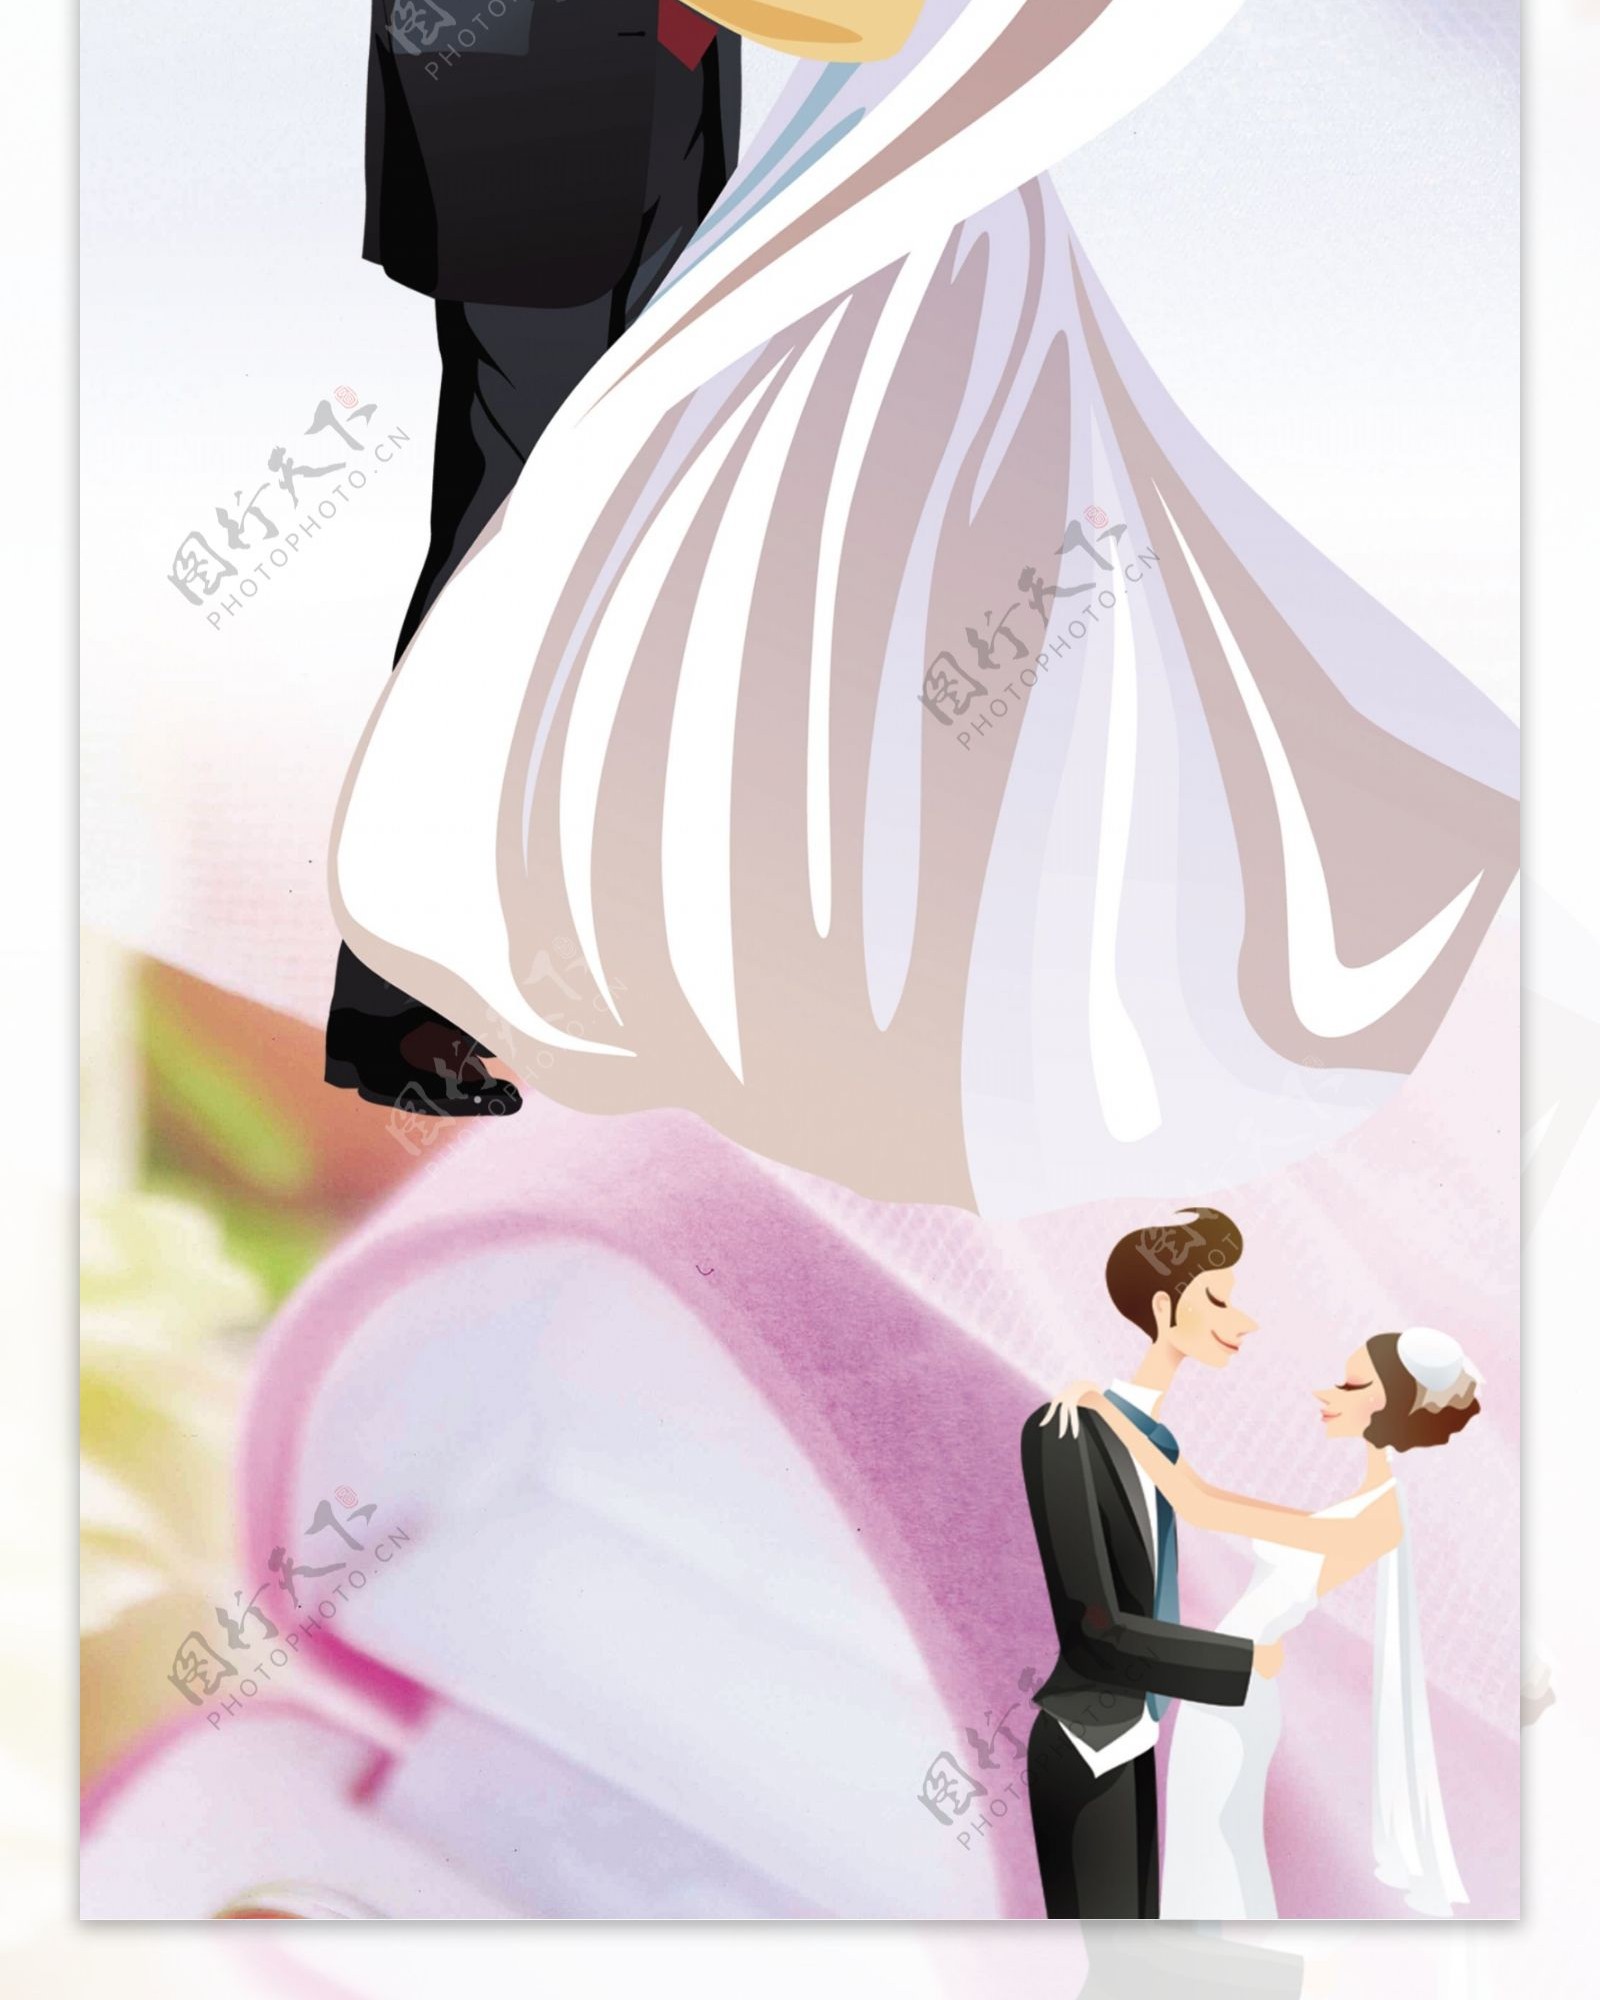 结婚海报图片